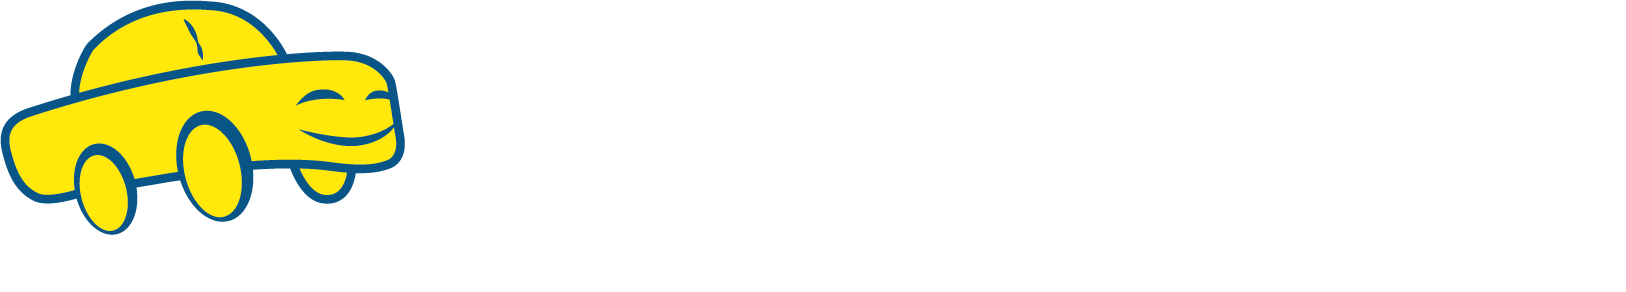 Nucar Collision Center